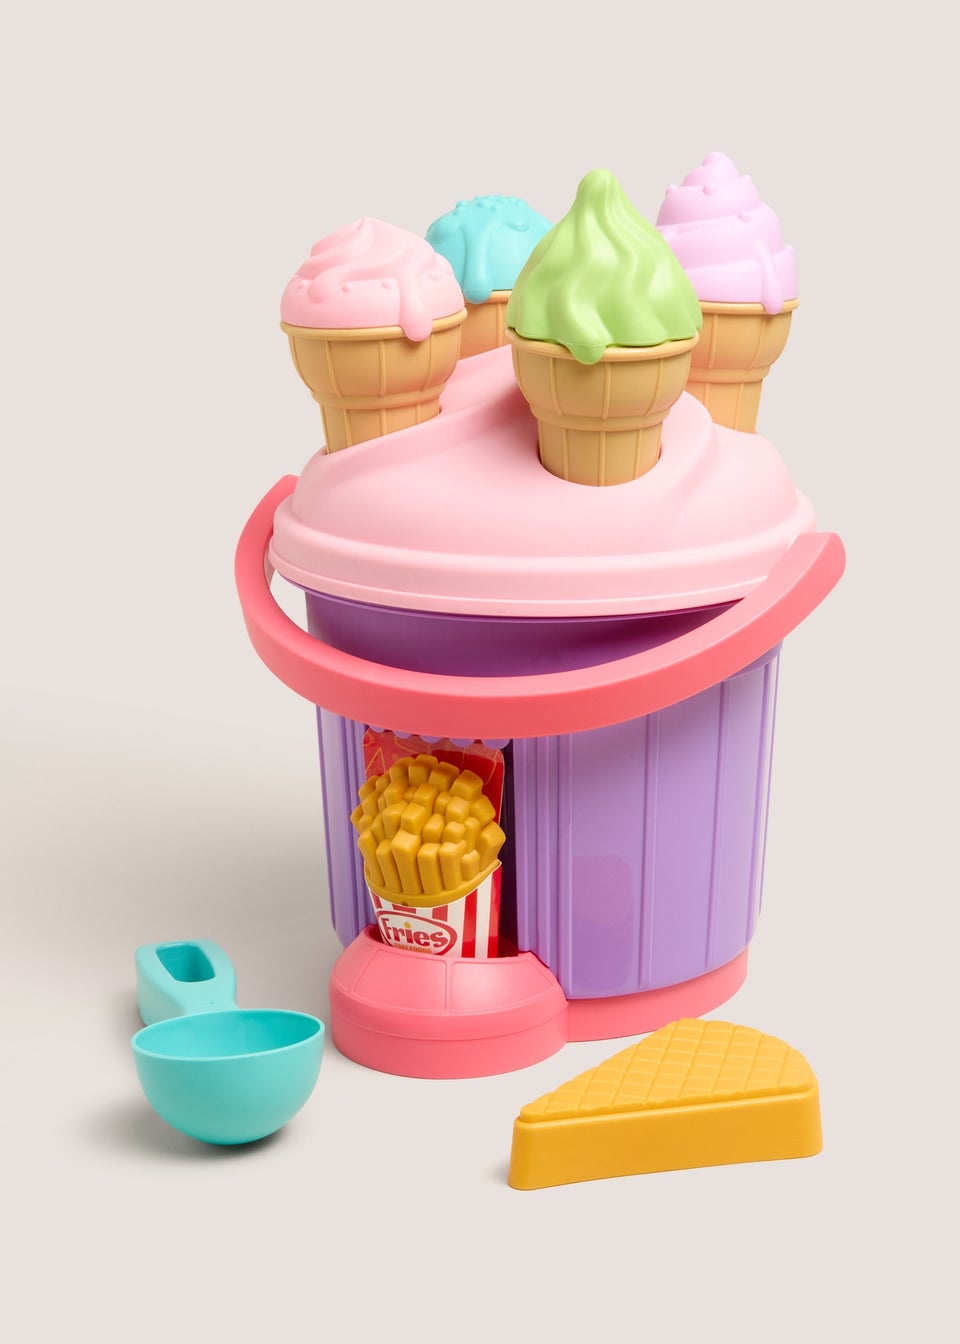 Ice Cream Toy Set (19cm x 19cm x 29cm)